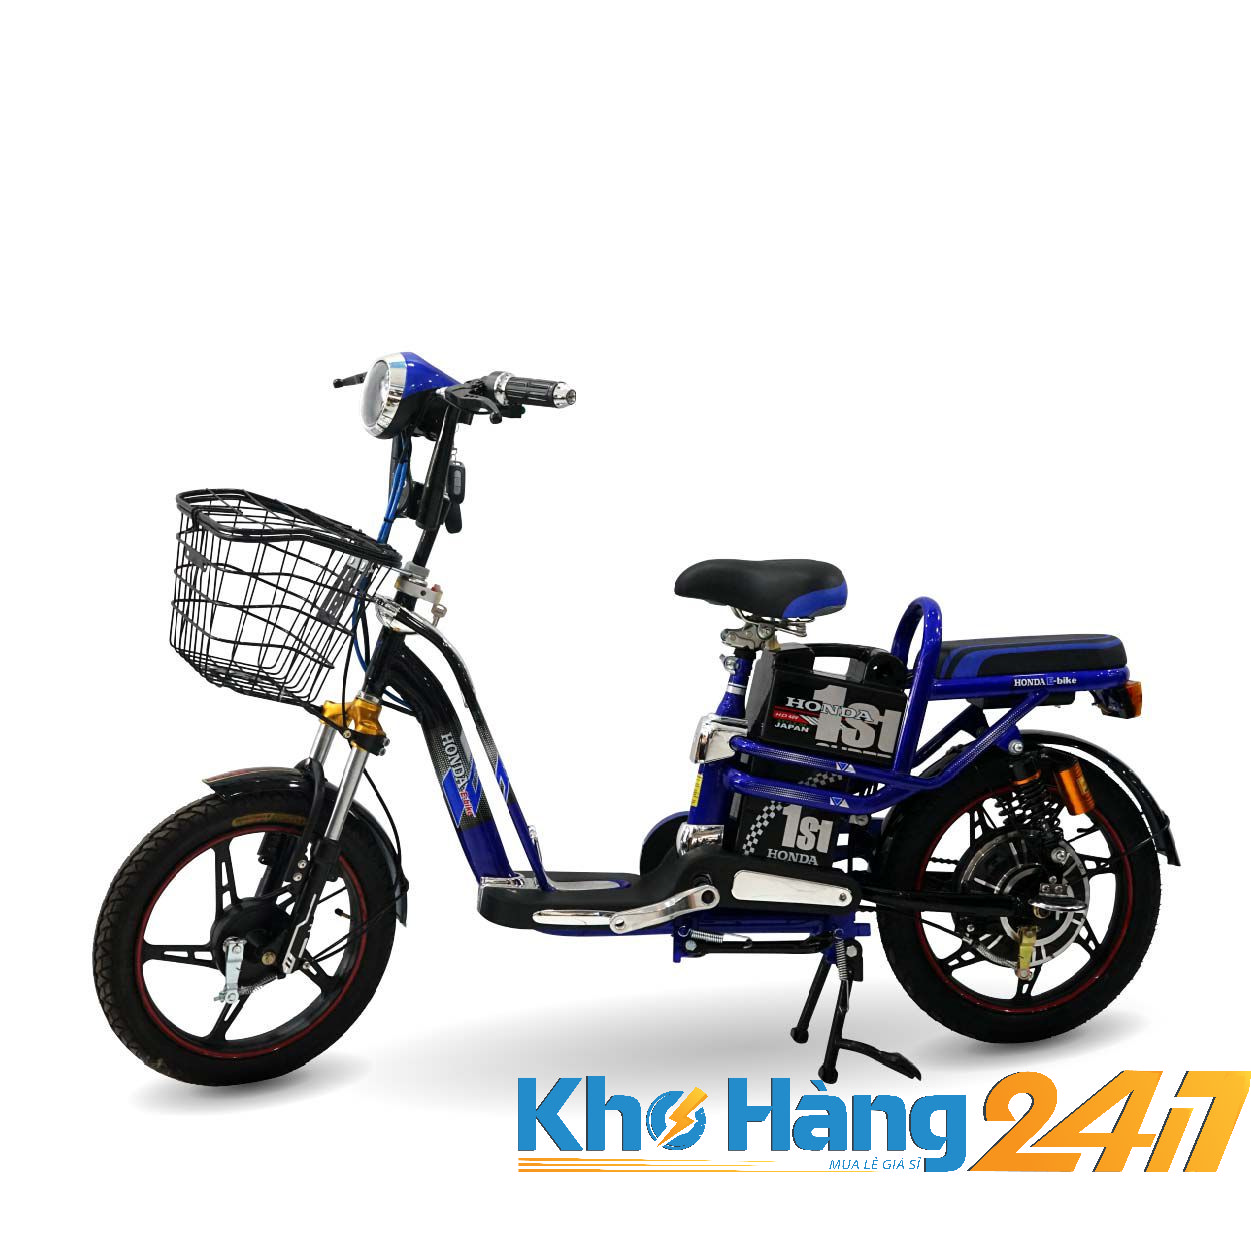 1111111111111111111 - Xe đạp điện Honda E-Bike